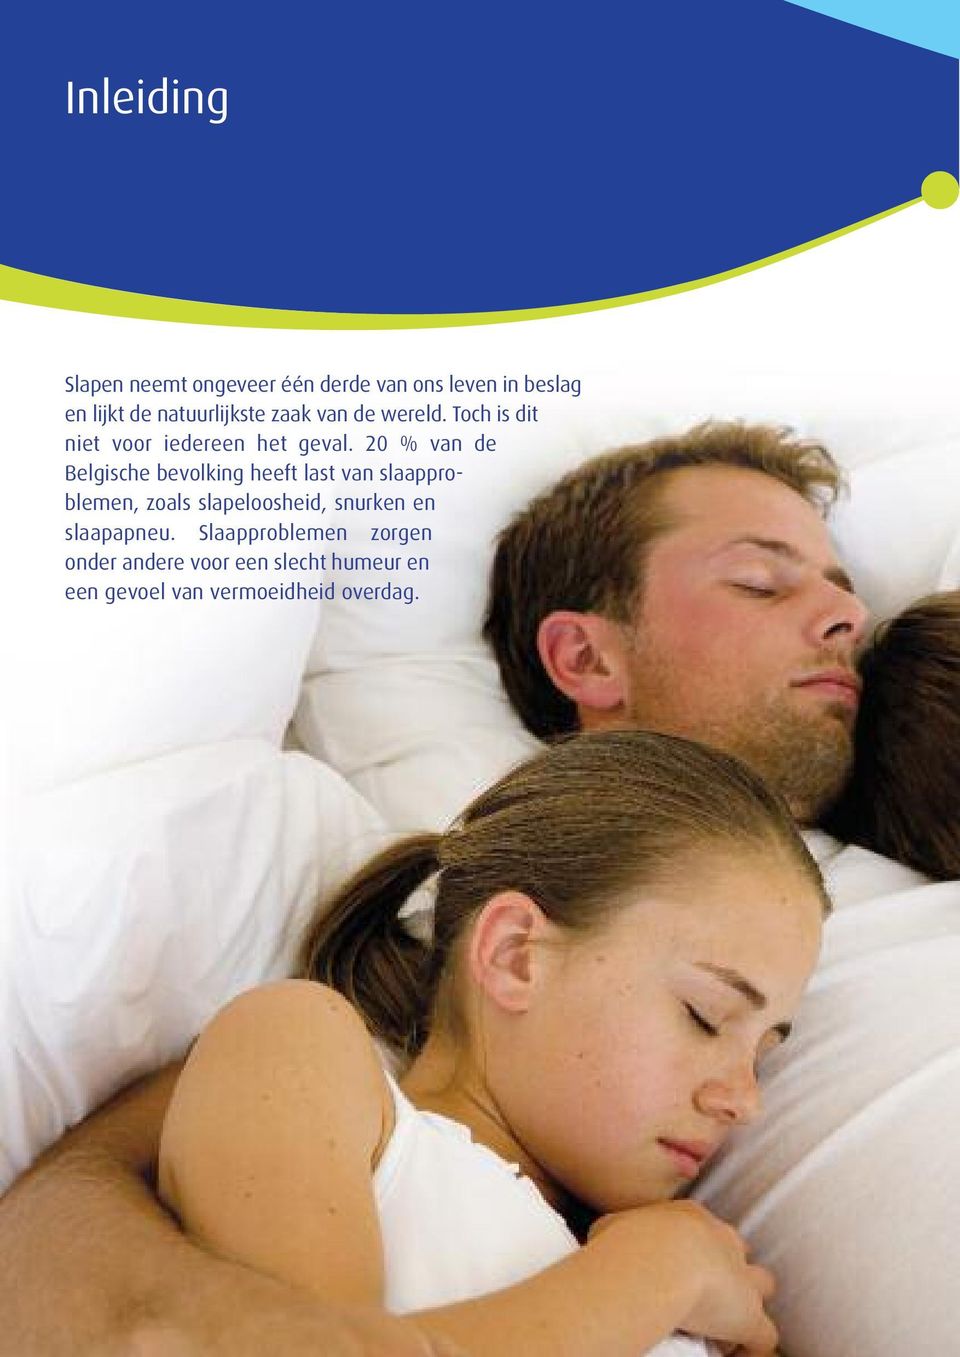 20 % van de Belgische bevolking heeft last van slaapproblemen, zoals slapeloosheid,